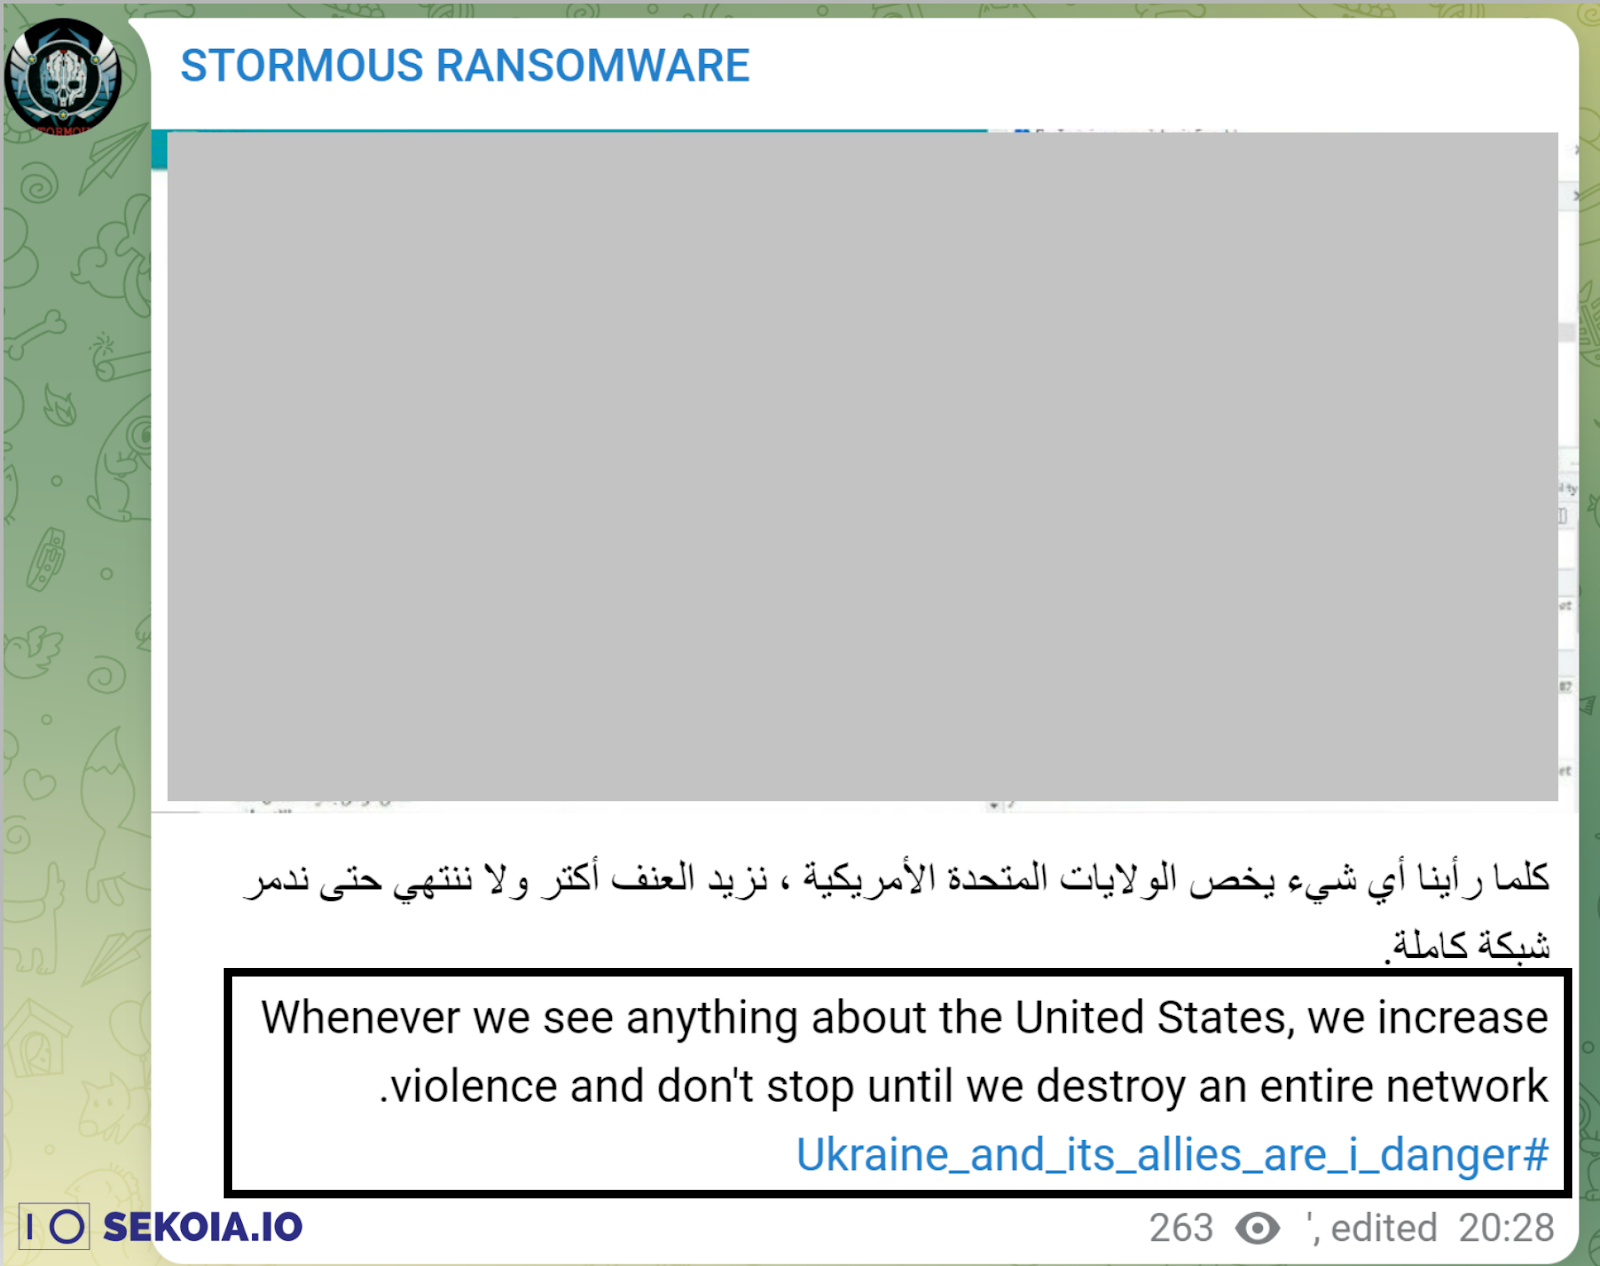 Annonces tumultueuses de Ransomware sur le compte Telegram du groupe.